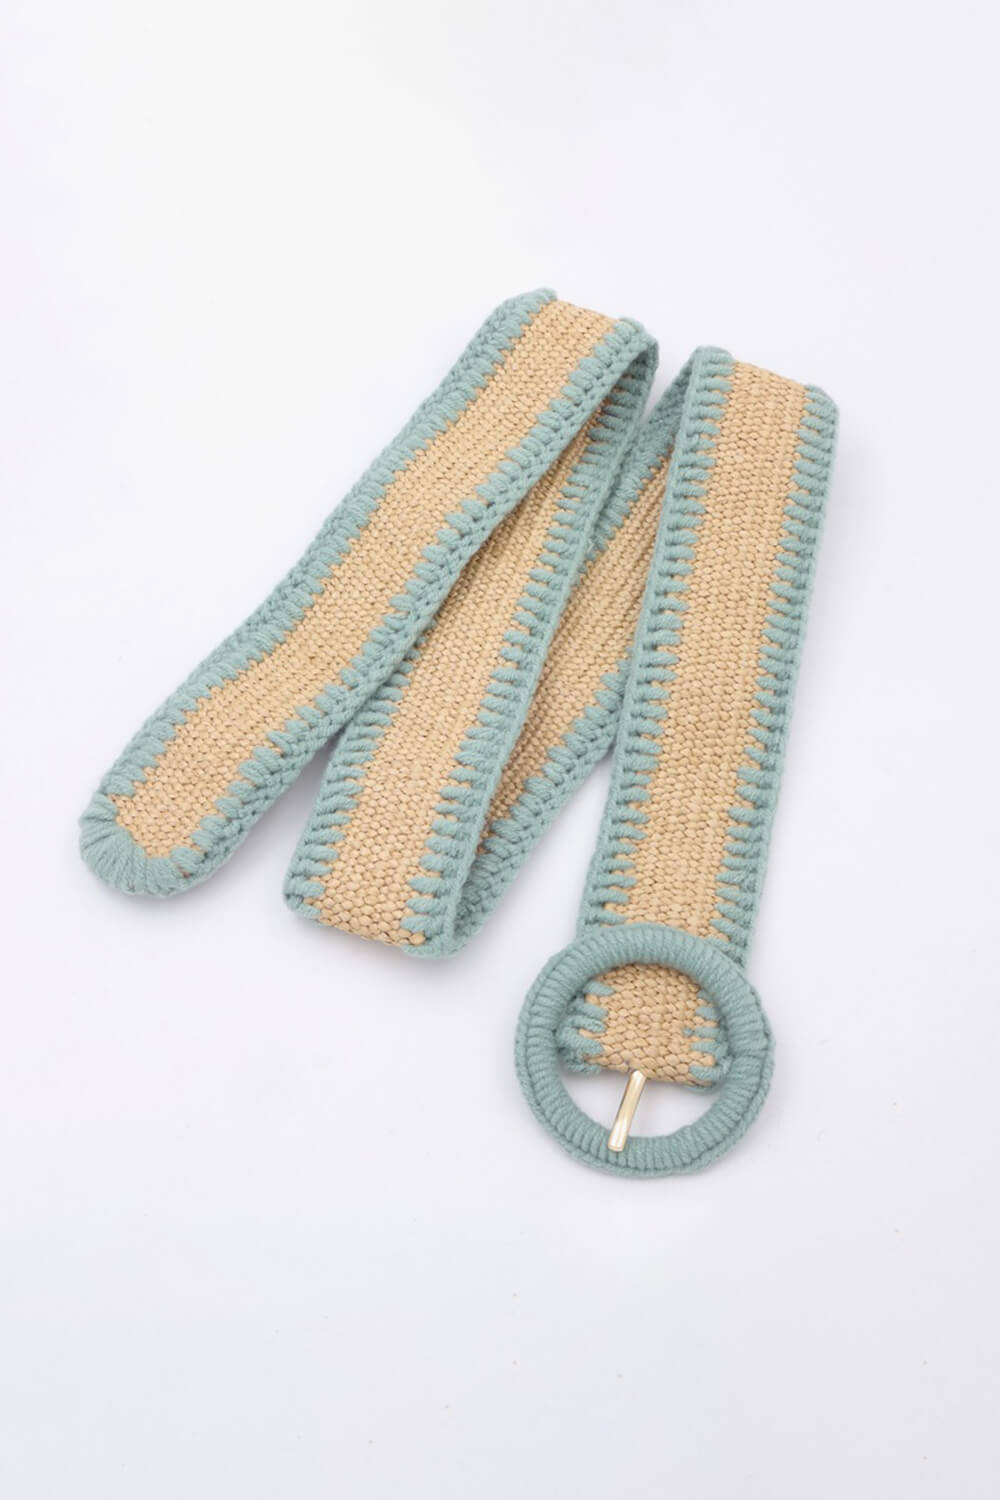 Knitted Belt Granola Girl Aesthetic